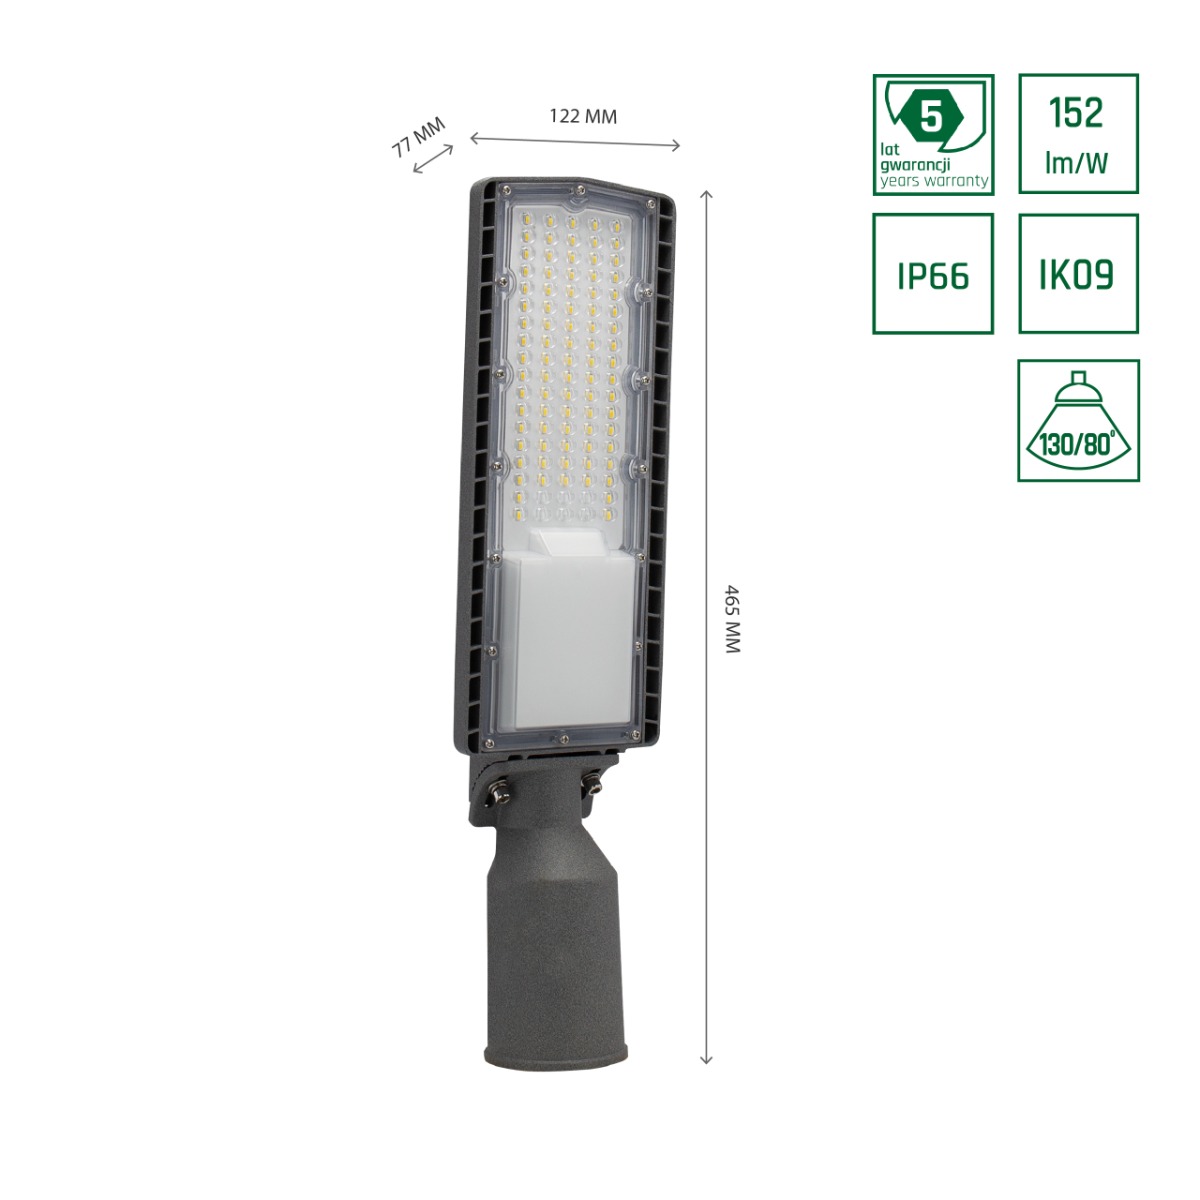 Iluminación Pública LED de 50W basculante con eficiencia de 152L/W y clasificación IP66.